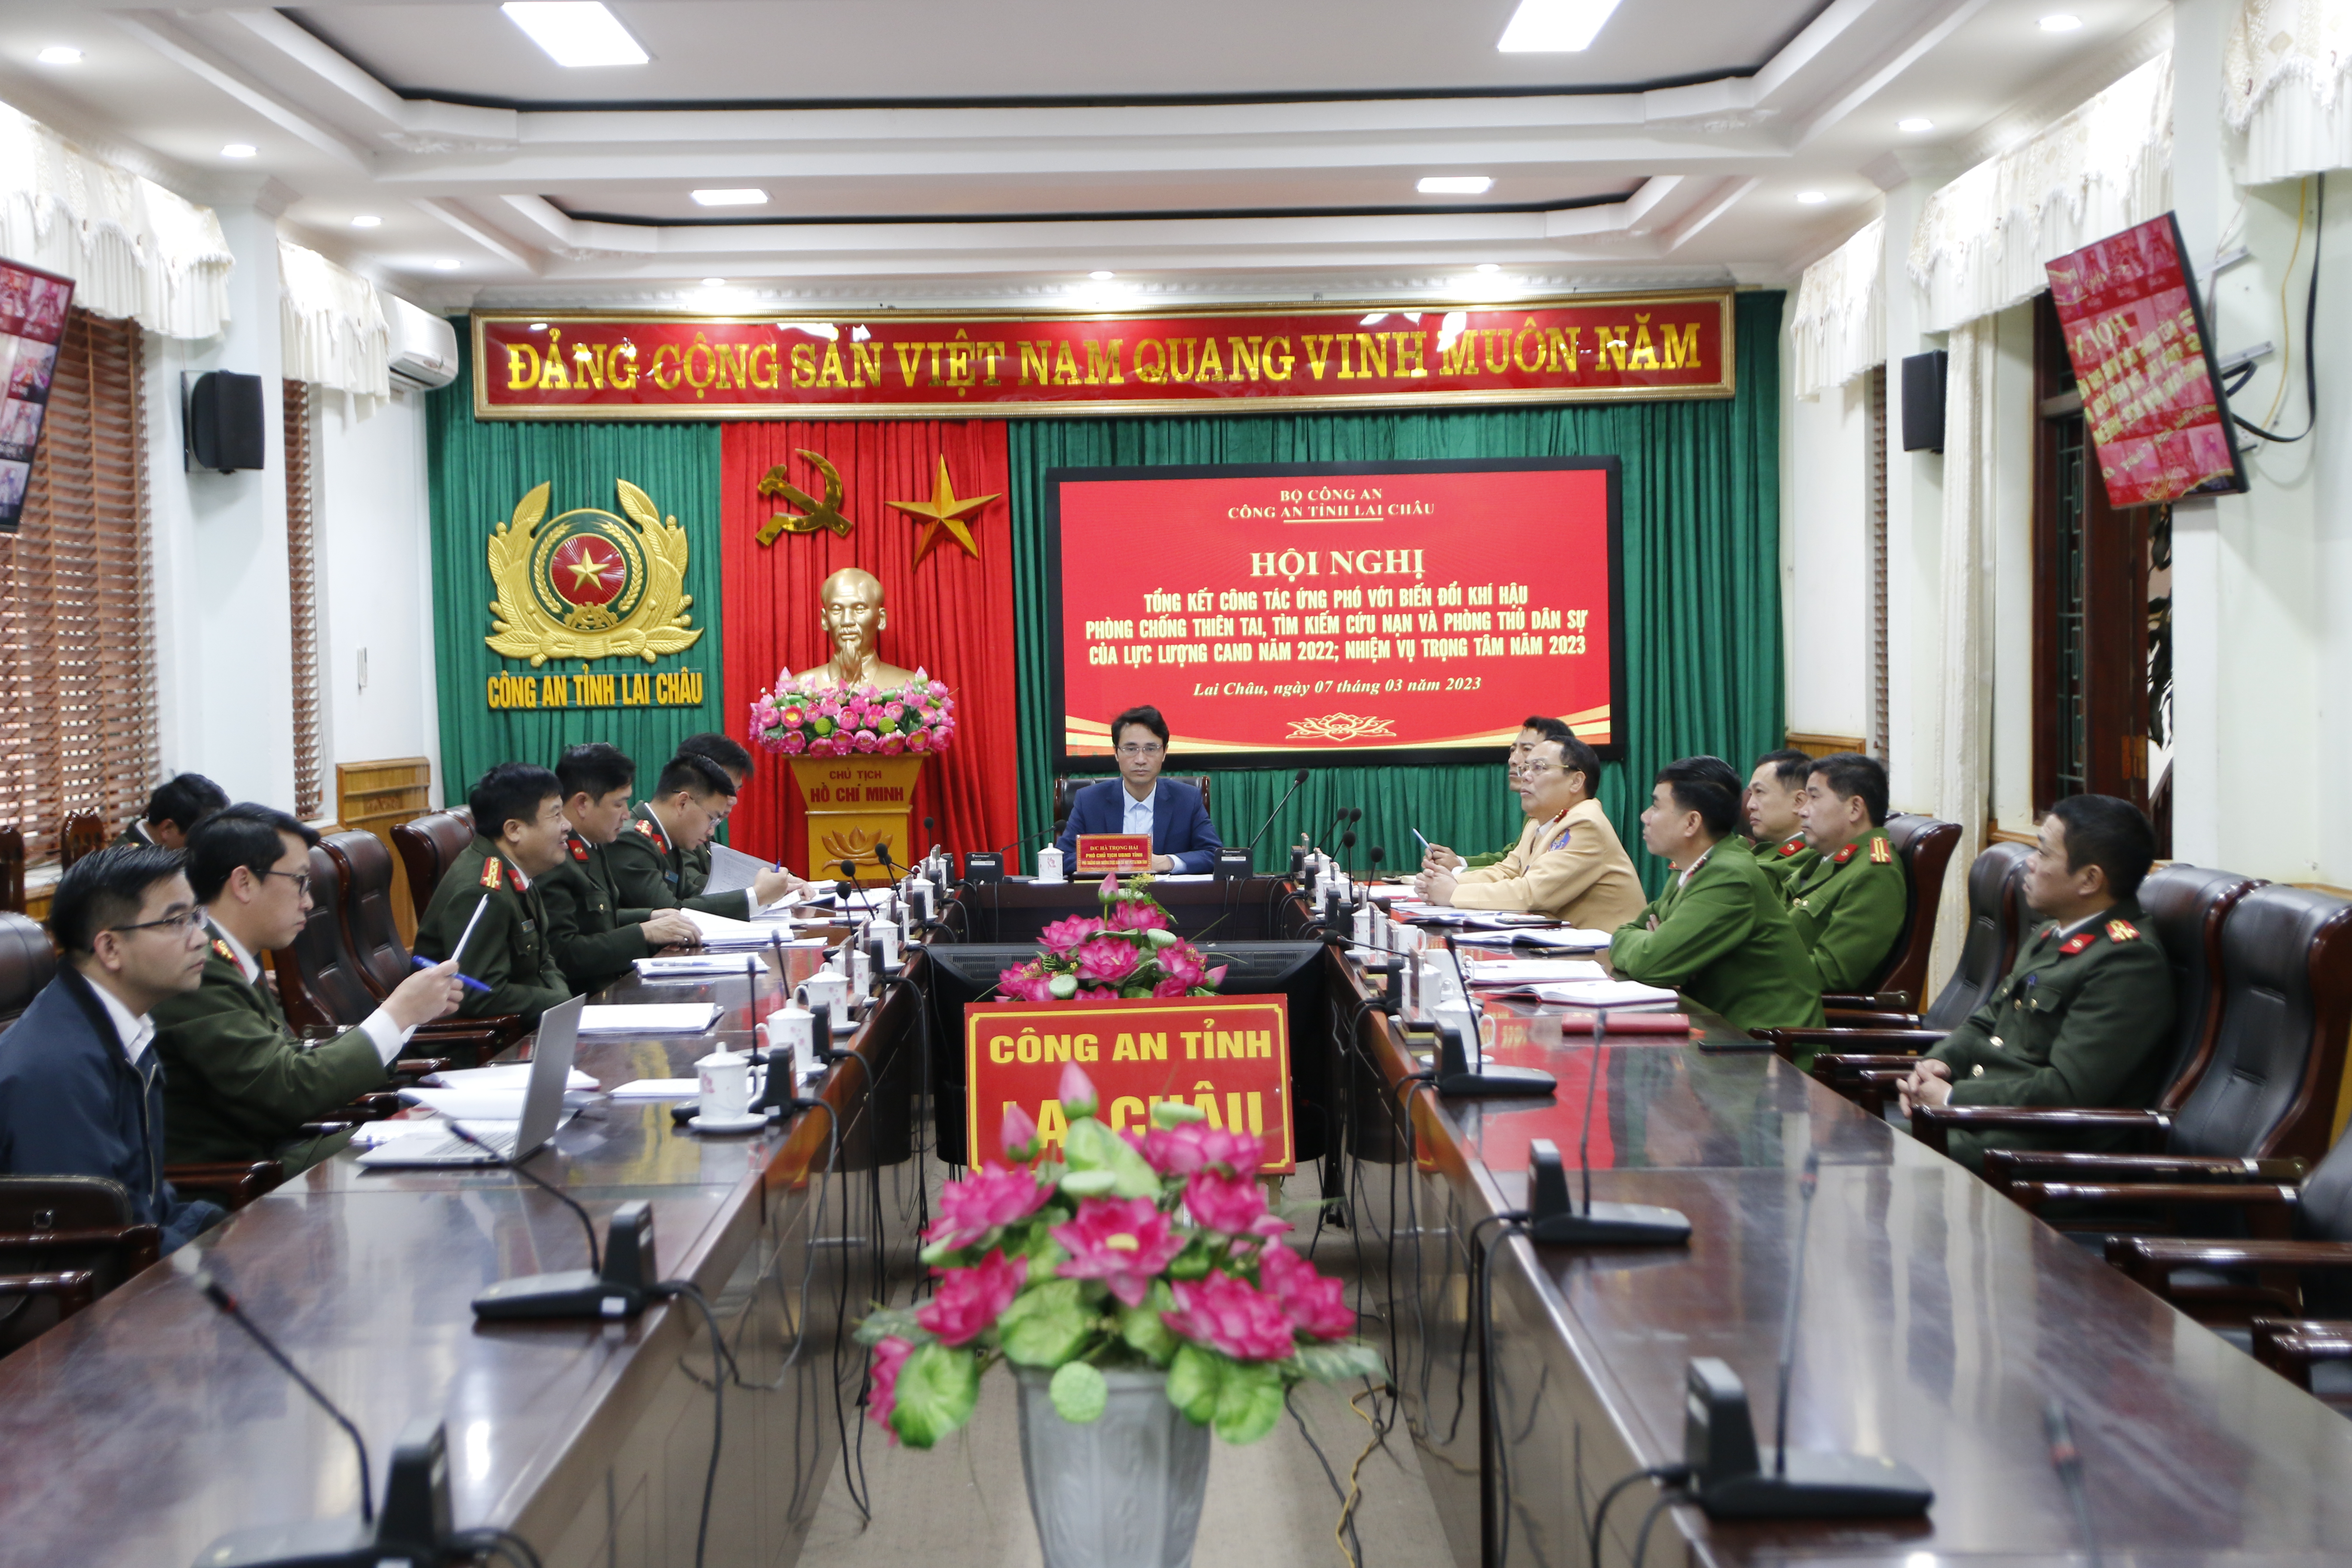 Đồng chí Hà Trọng Hải - Phó chủ tịch UBND tỉnh cùng các đại biểu dự hội nghị tại điểm cầu Công an tỉnh